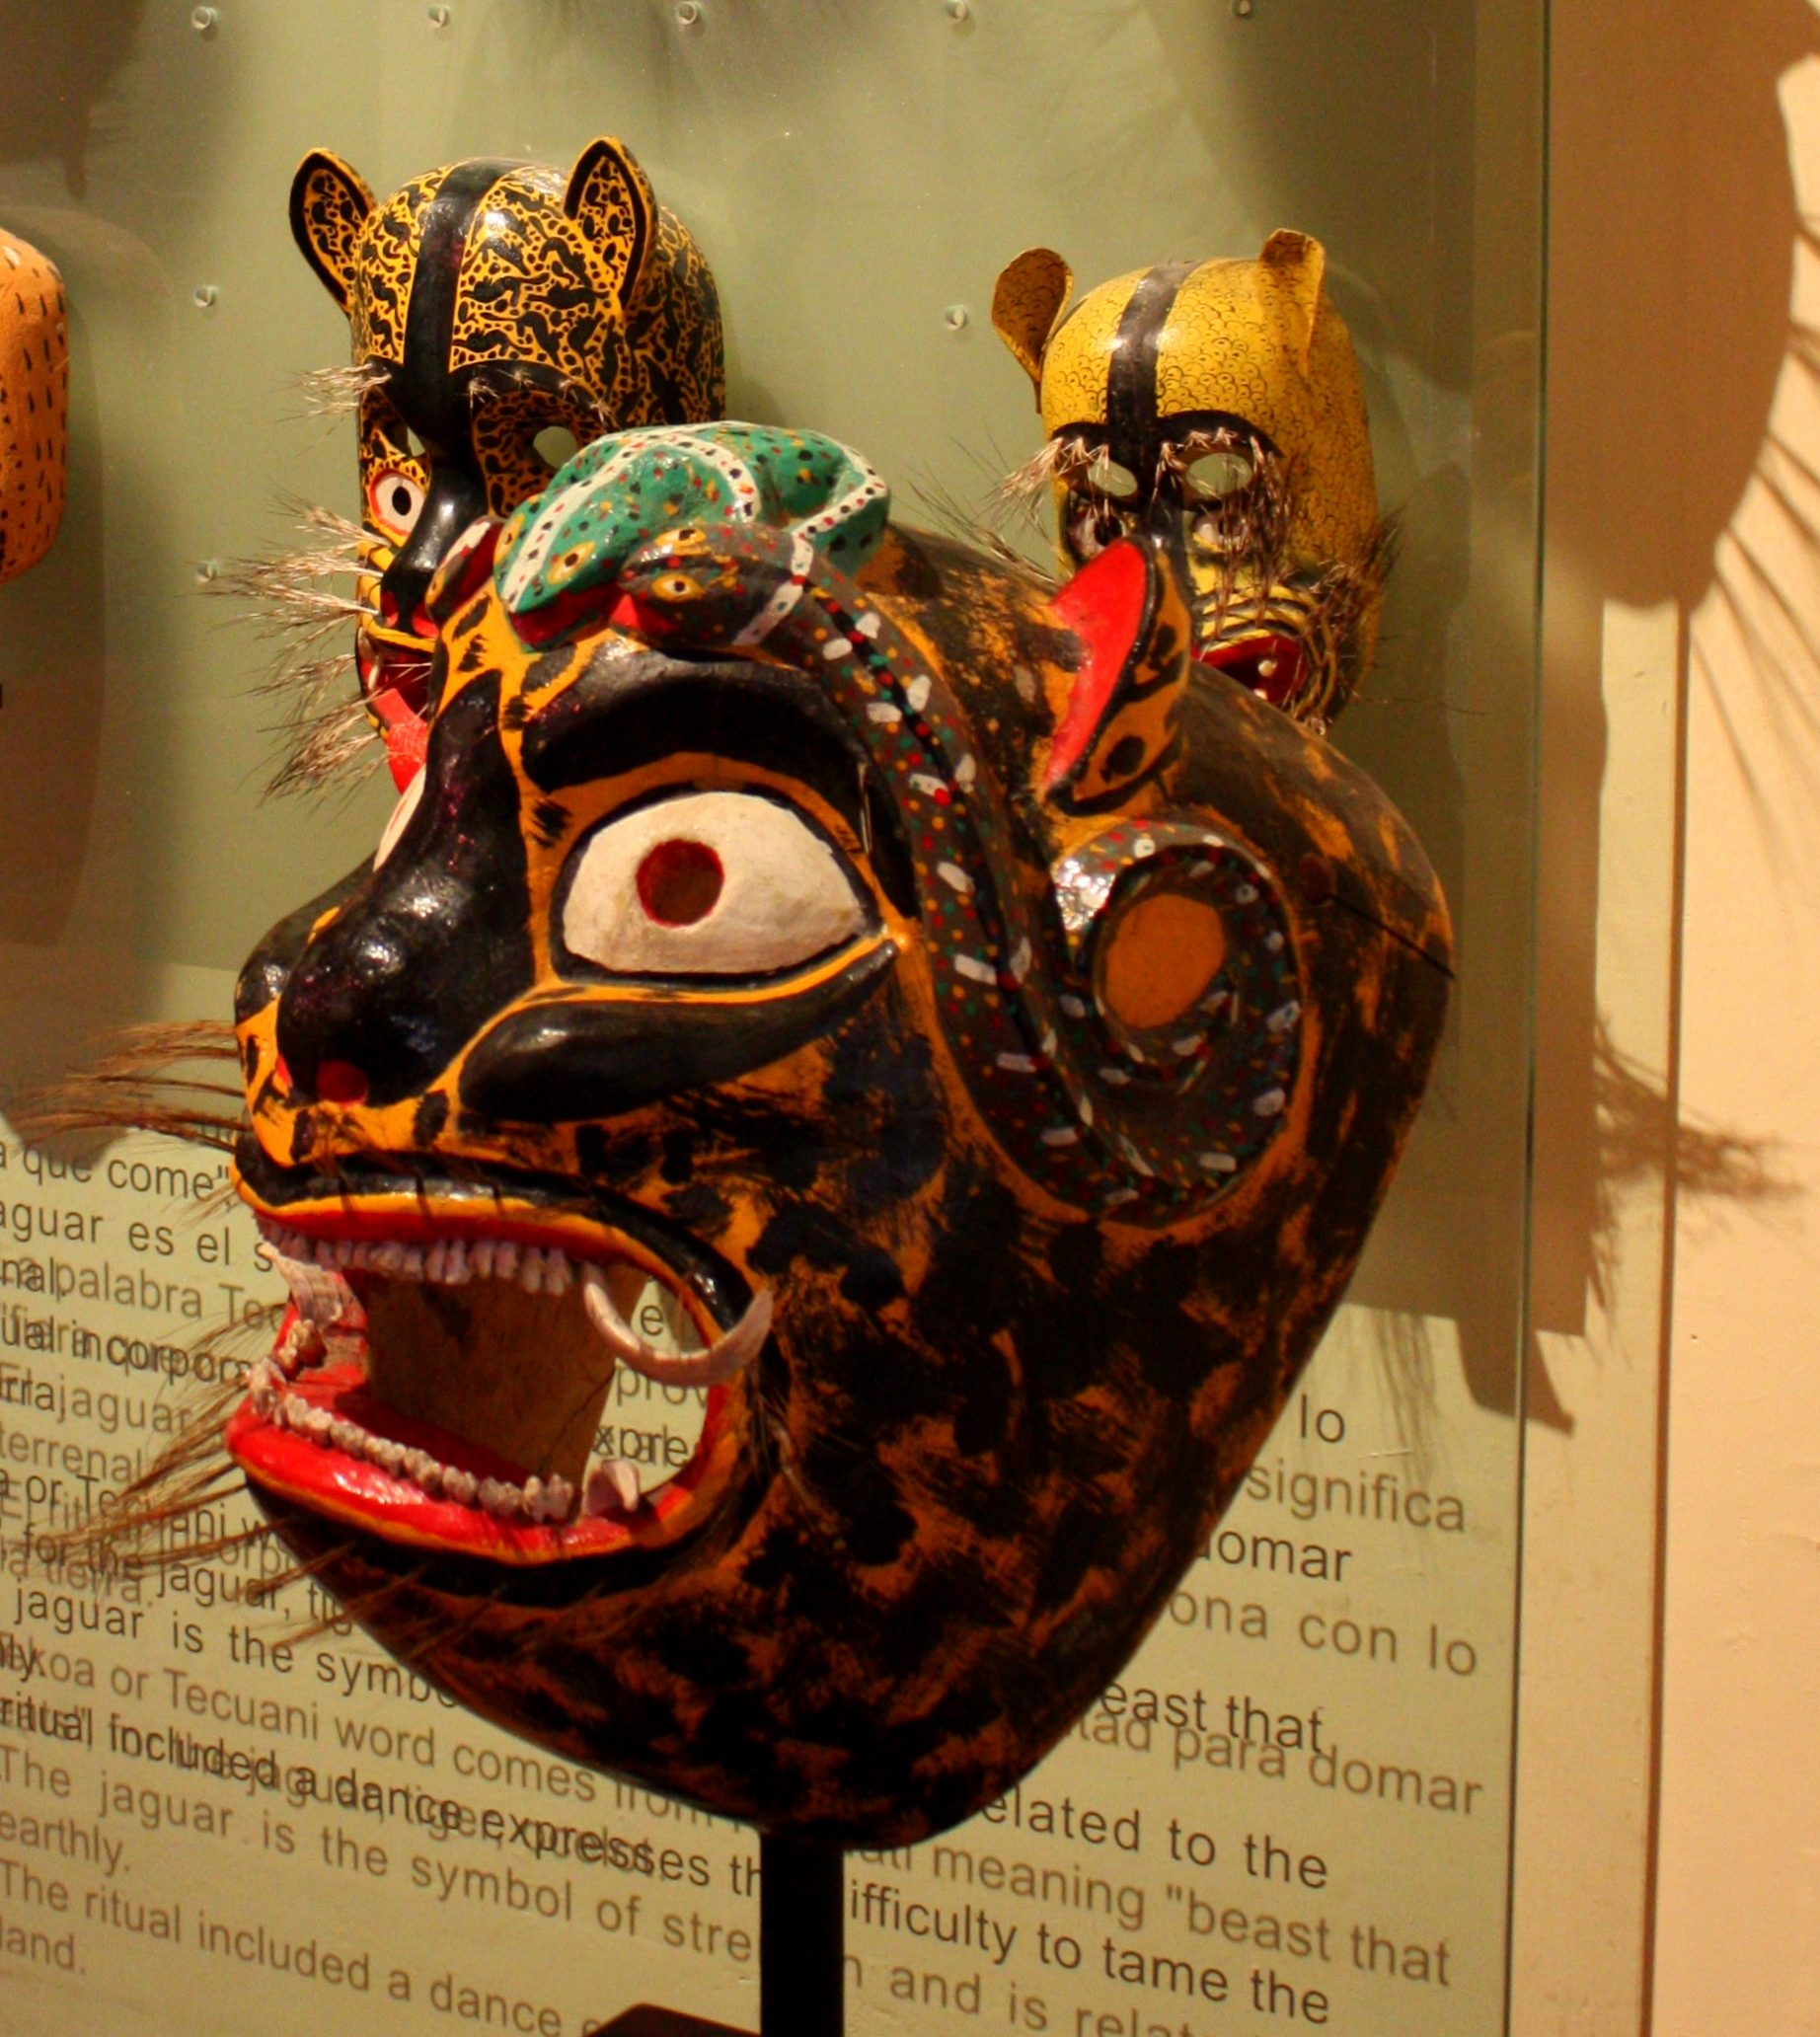 Museo Nacional de la Máscara (Photo: antoniorambles.com)